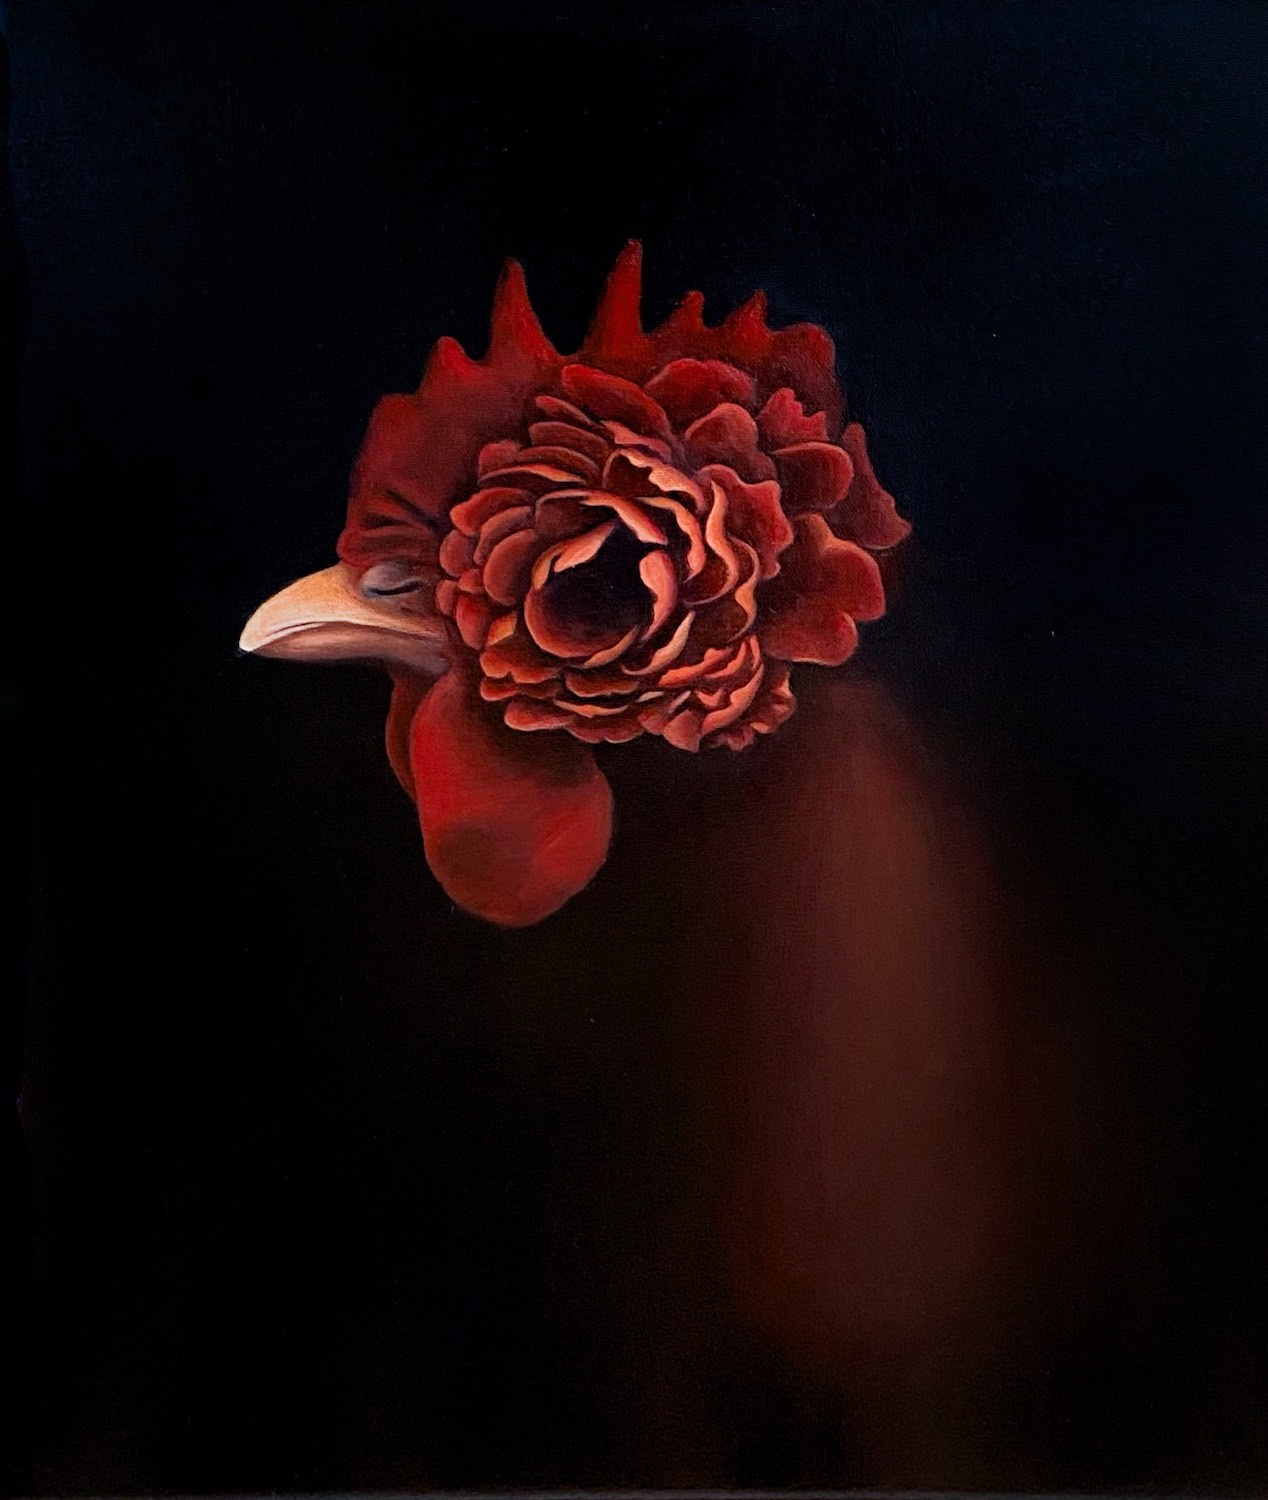 La poule dans le noir, 2021, Acrylic on canvas, 20x16 in